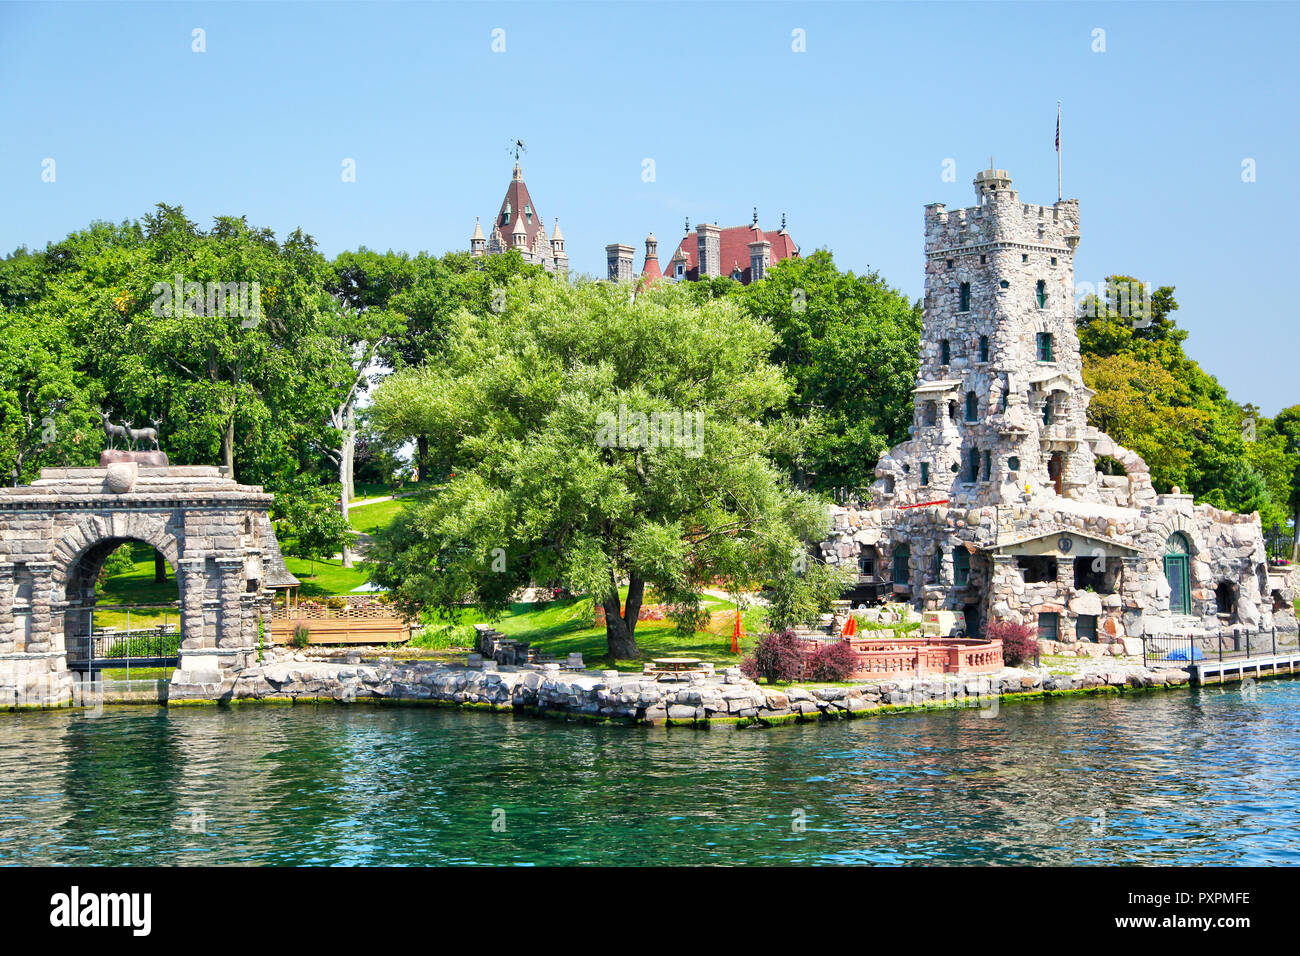 ALEXANDRIA, Etats-Unis - le 24 août 2012 : château Boldt historique dans la région des Mille-Îles de l'État de New York sur l'Île du Cœur dans le fleuve Saint-Laurent. En 1900, Banque D'Images